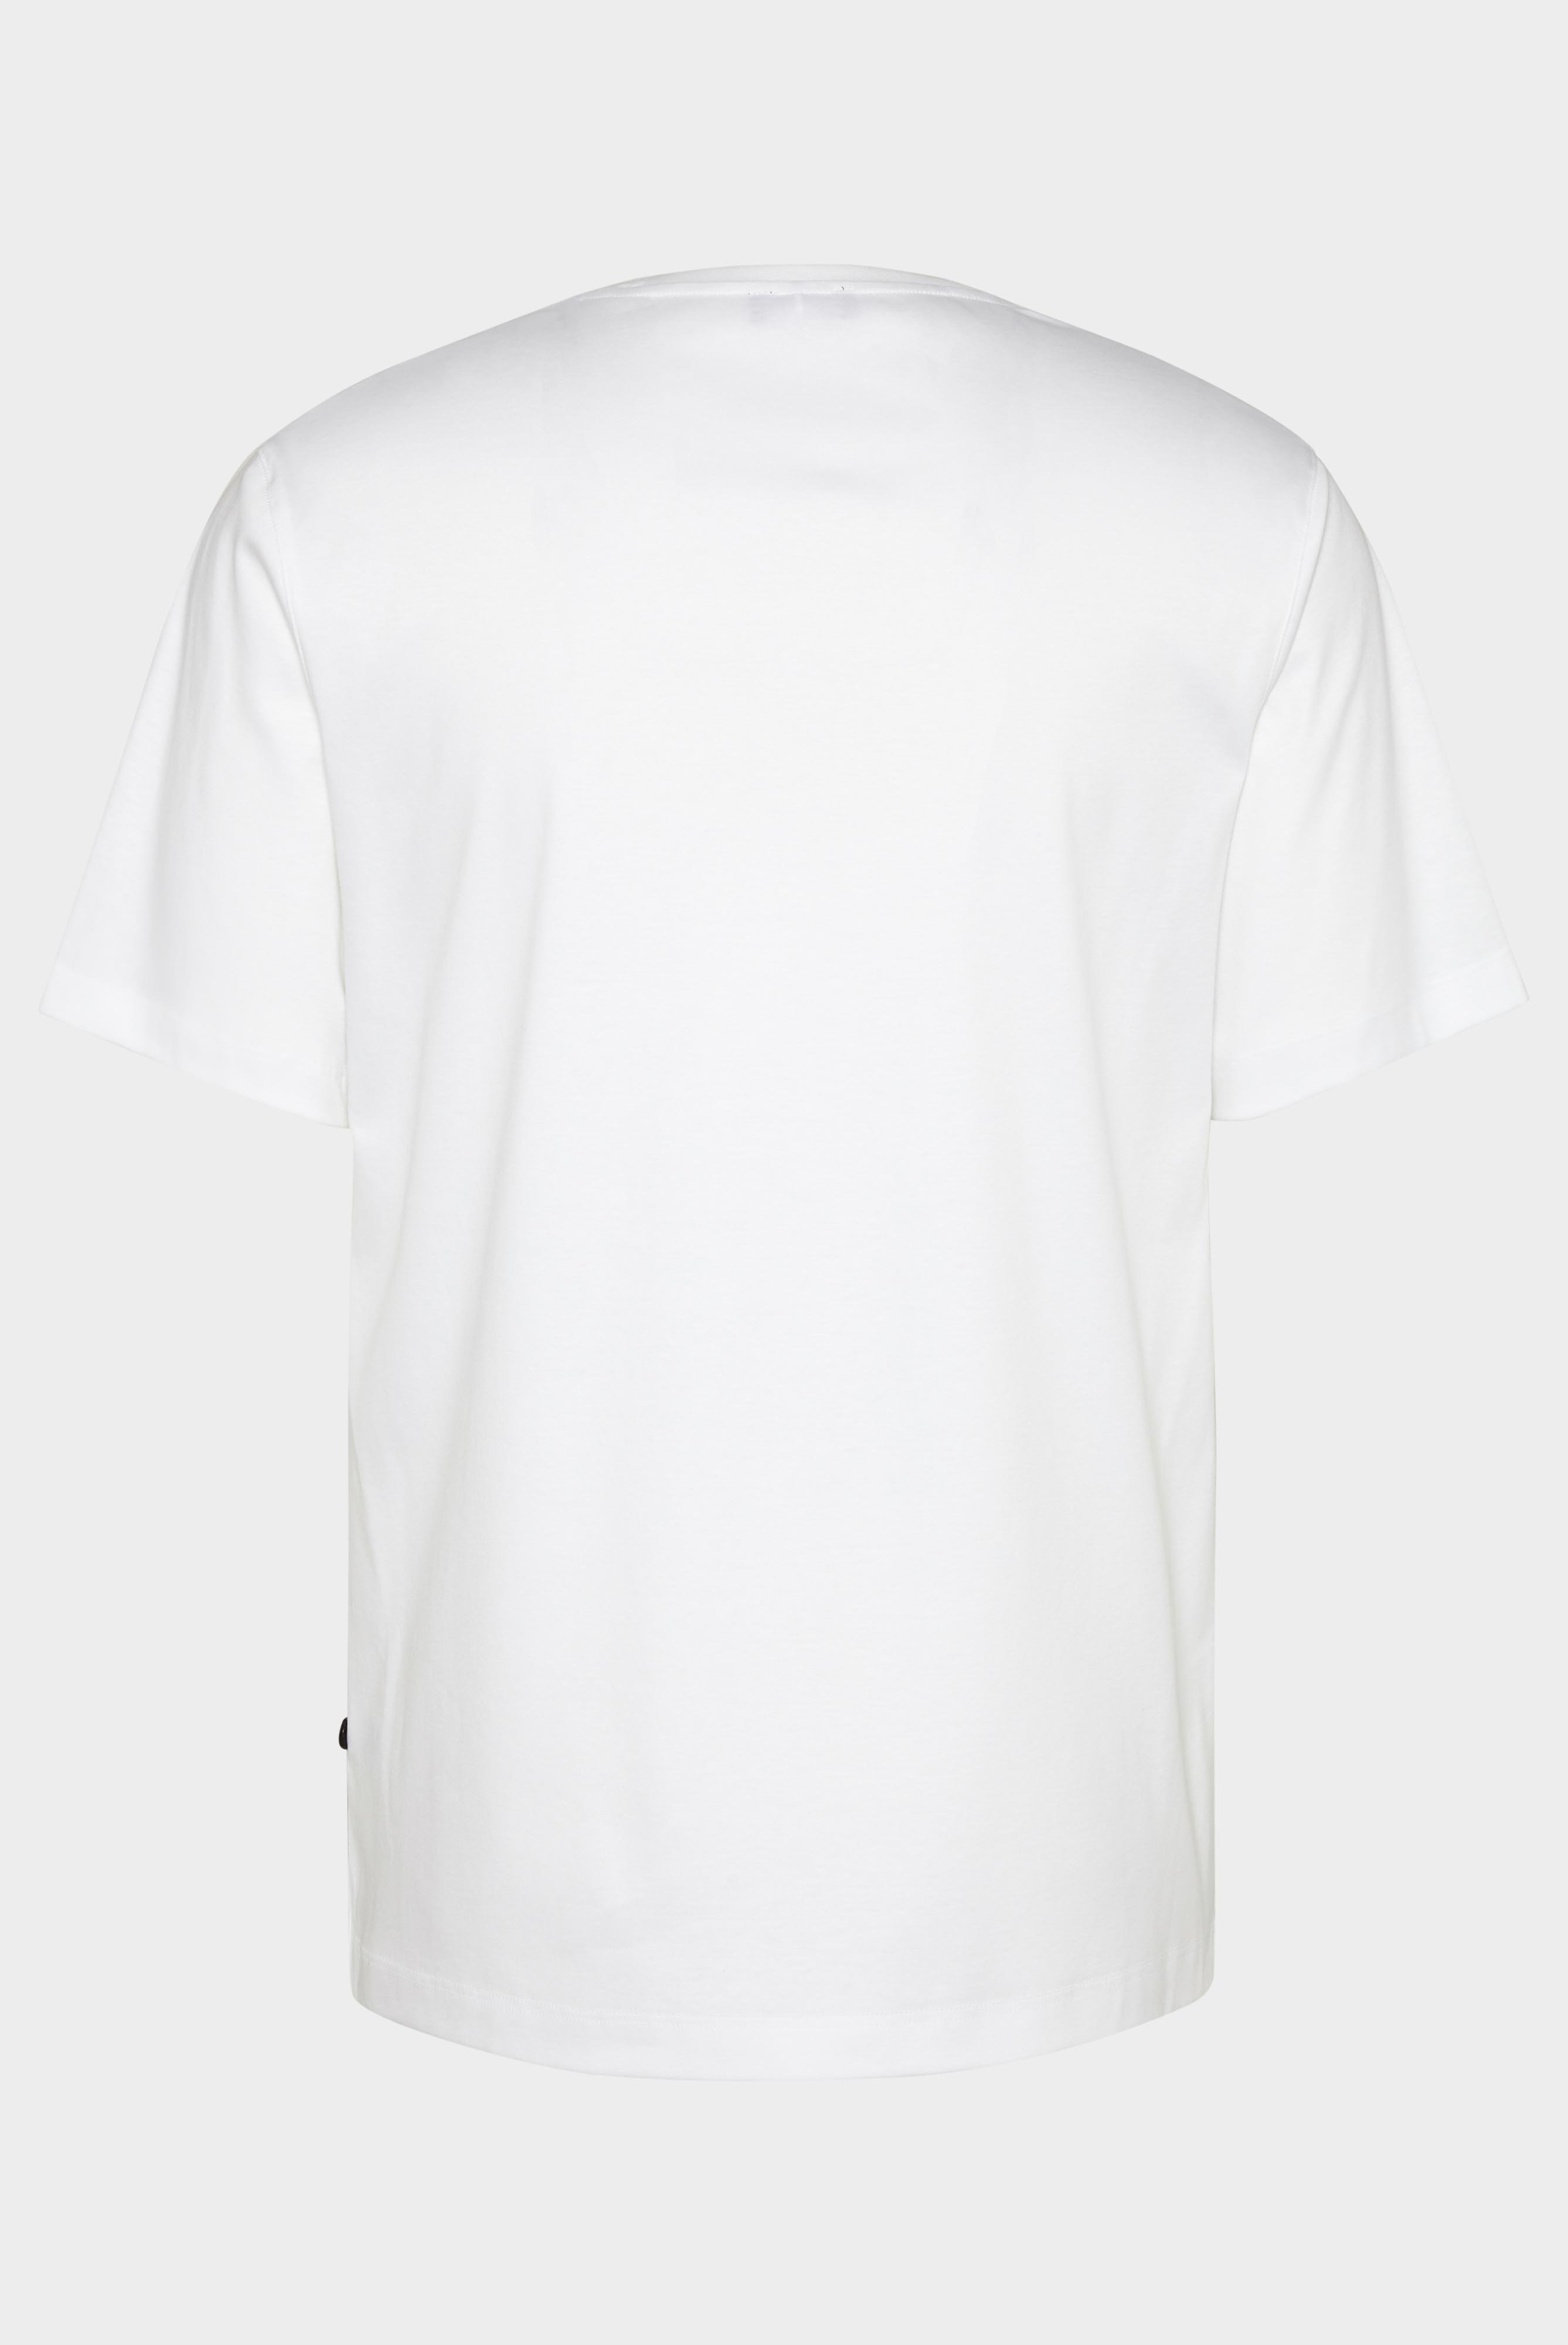 T-Shirts+Oversize Jersey T-Shirt mit Brusttasche+20.1776.GZ.180031.000.M